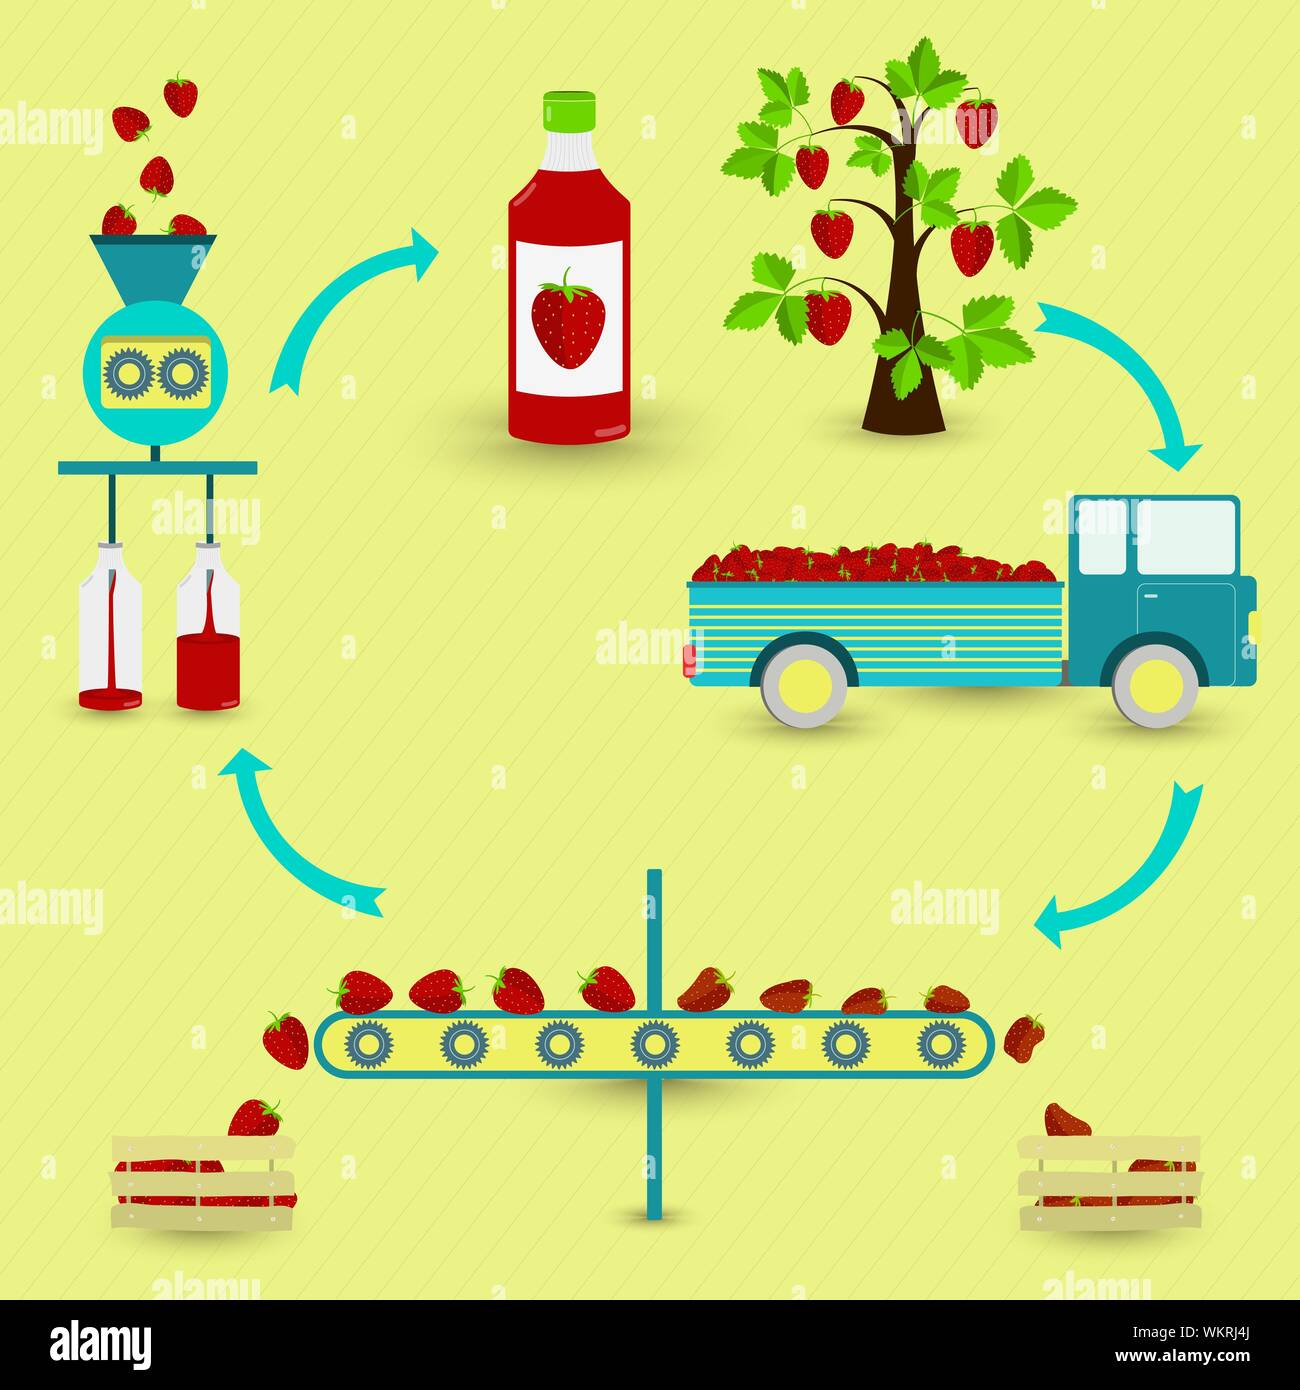 Los pasos de producción de jugo de fresas. Madroño, recolección, transporte, separación de sana y fresas podridas, procesados en la fábrica y botted Ilustración del Vector